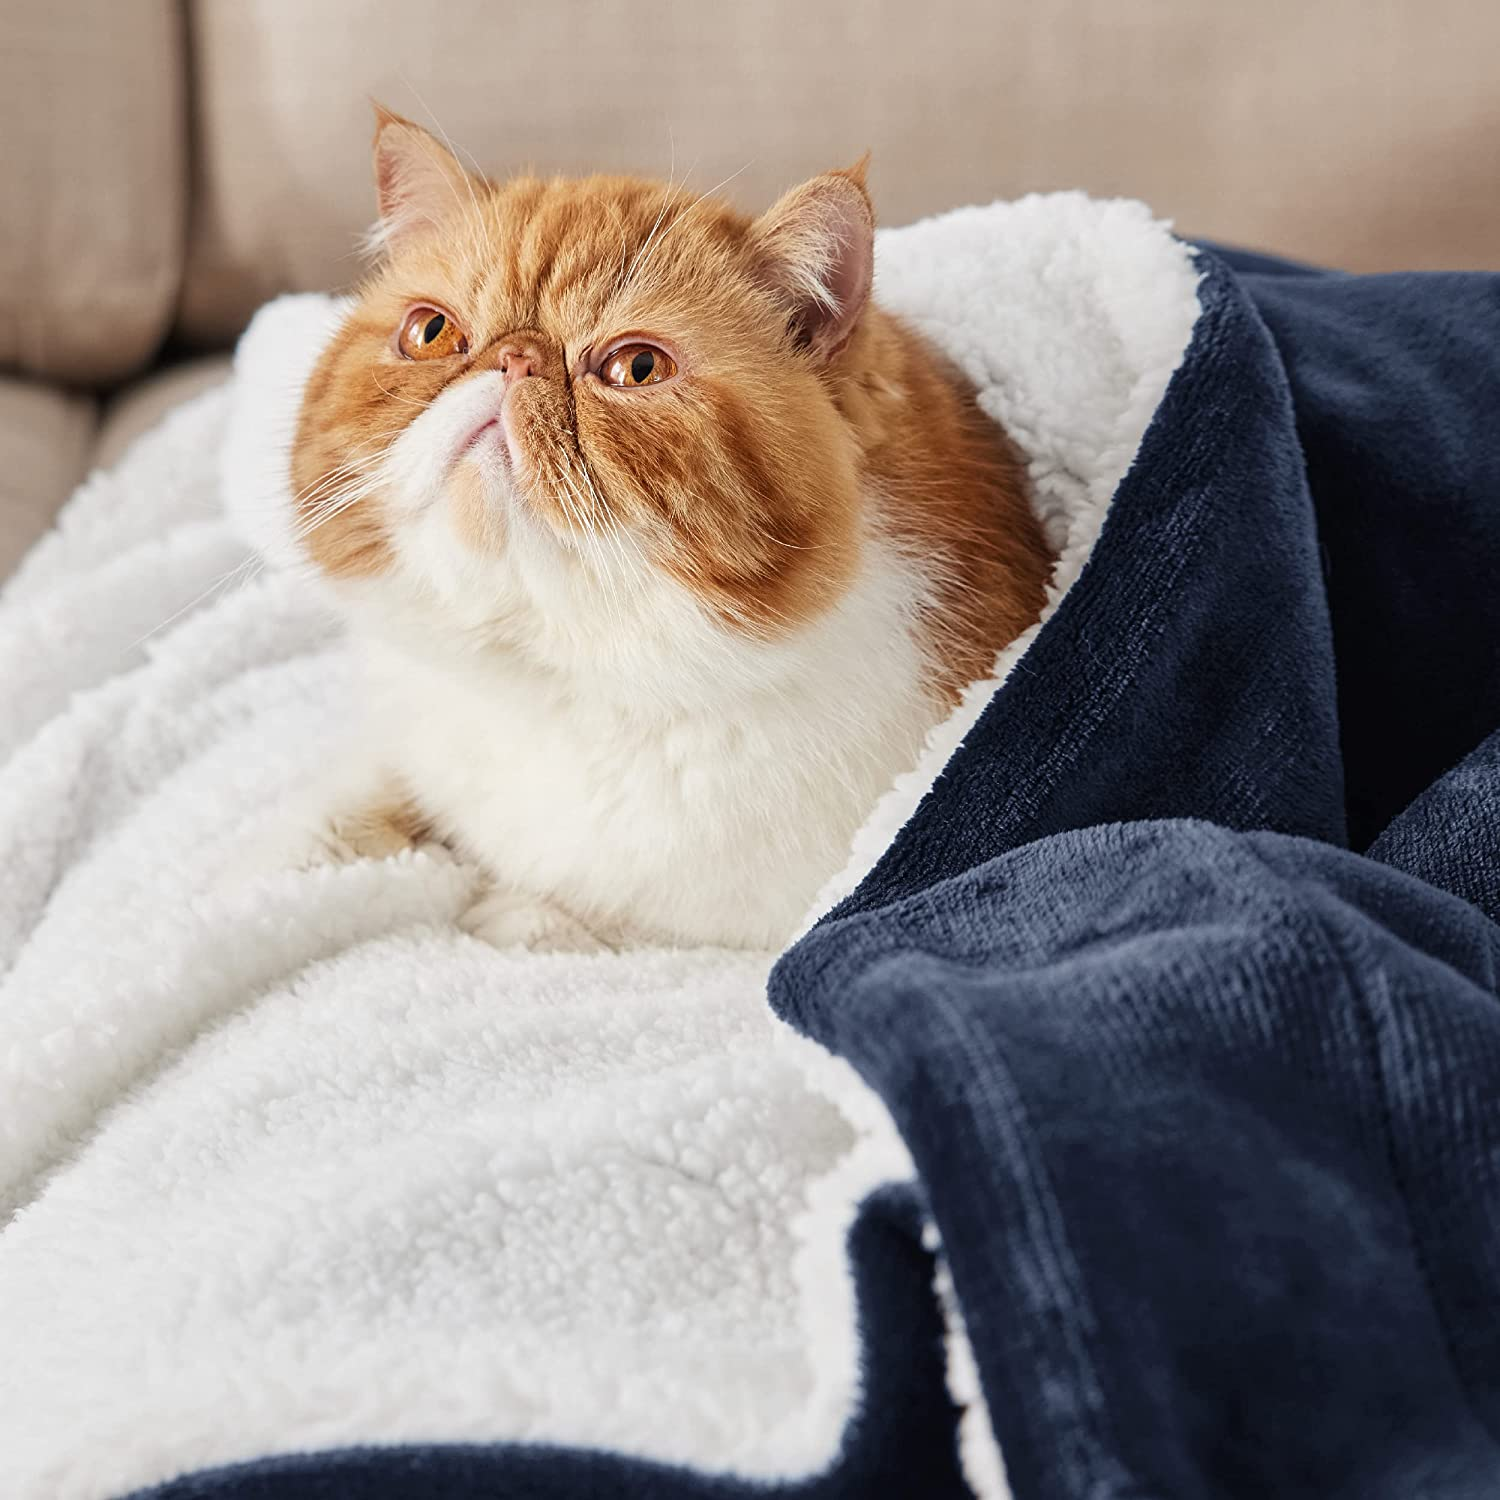 Cat in a comfortable Fleece Throw Queen Size Blanket